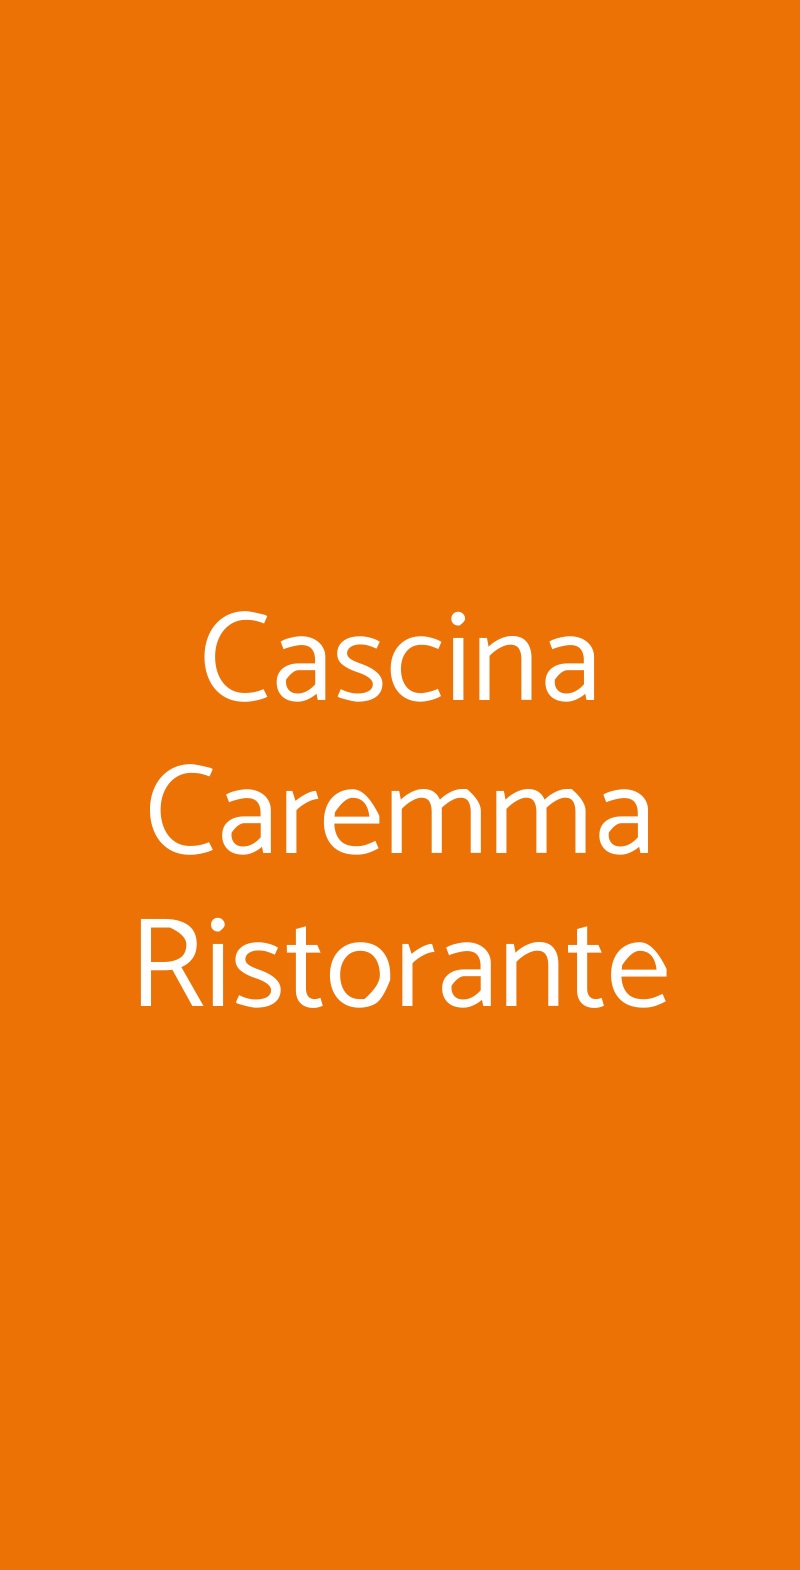 Cascina Caremma Ristorante Besate menù 1 pagina